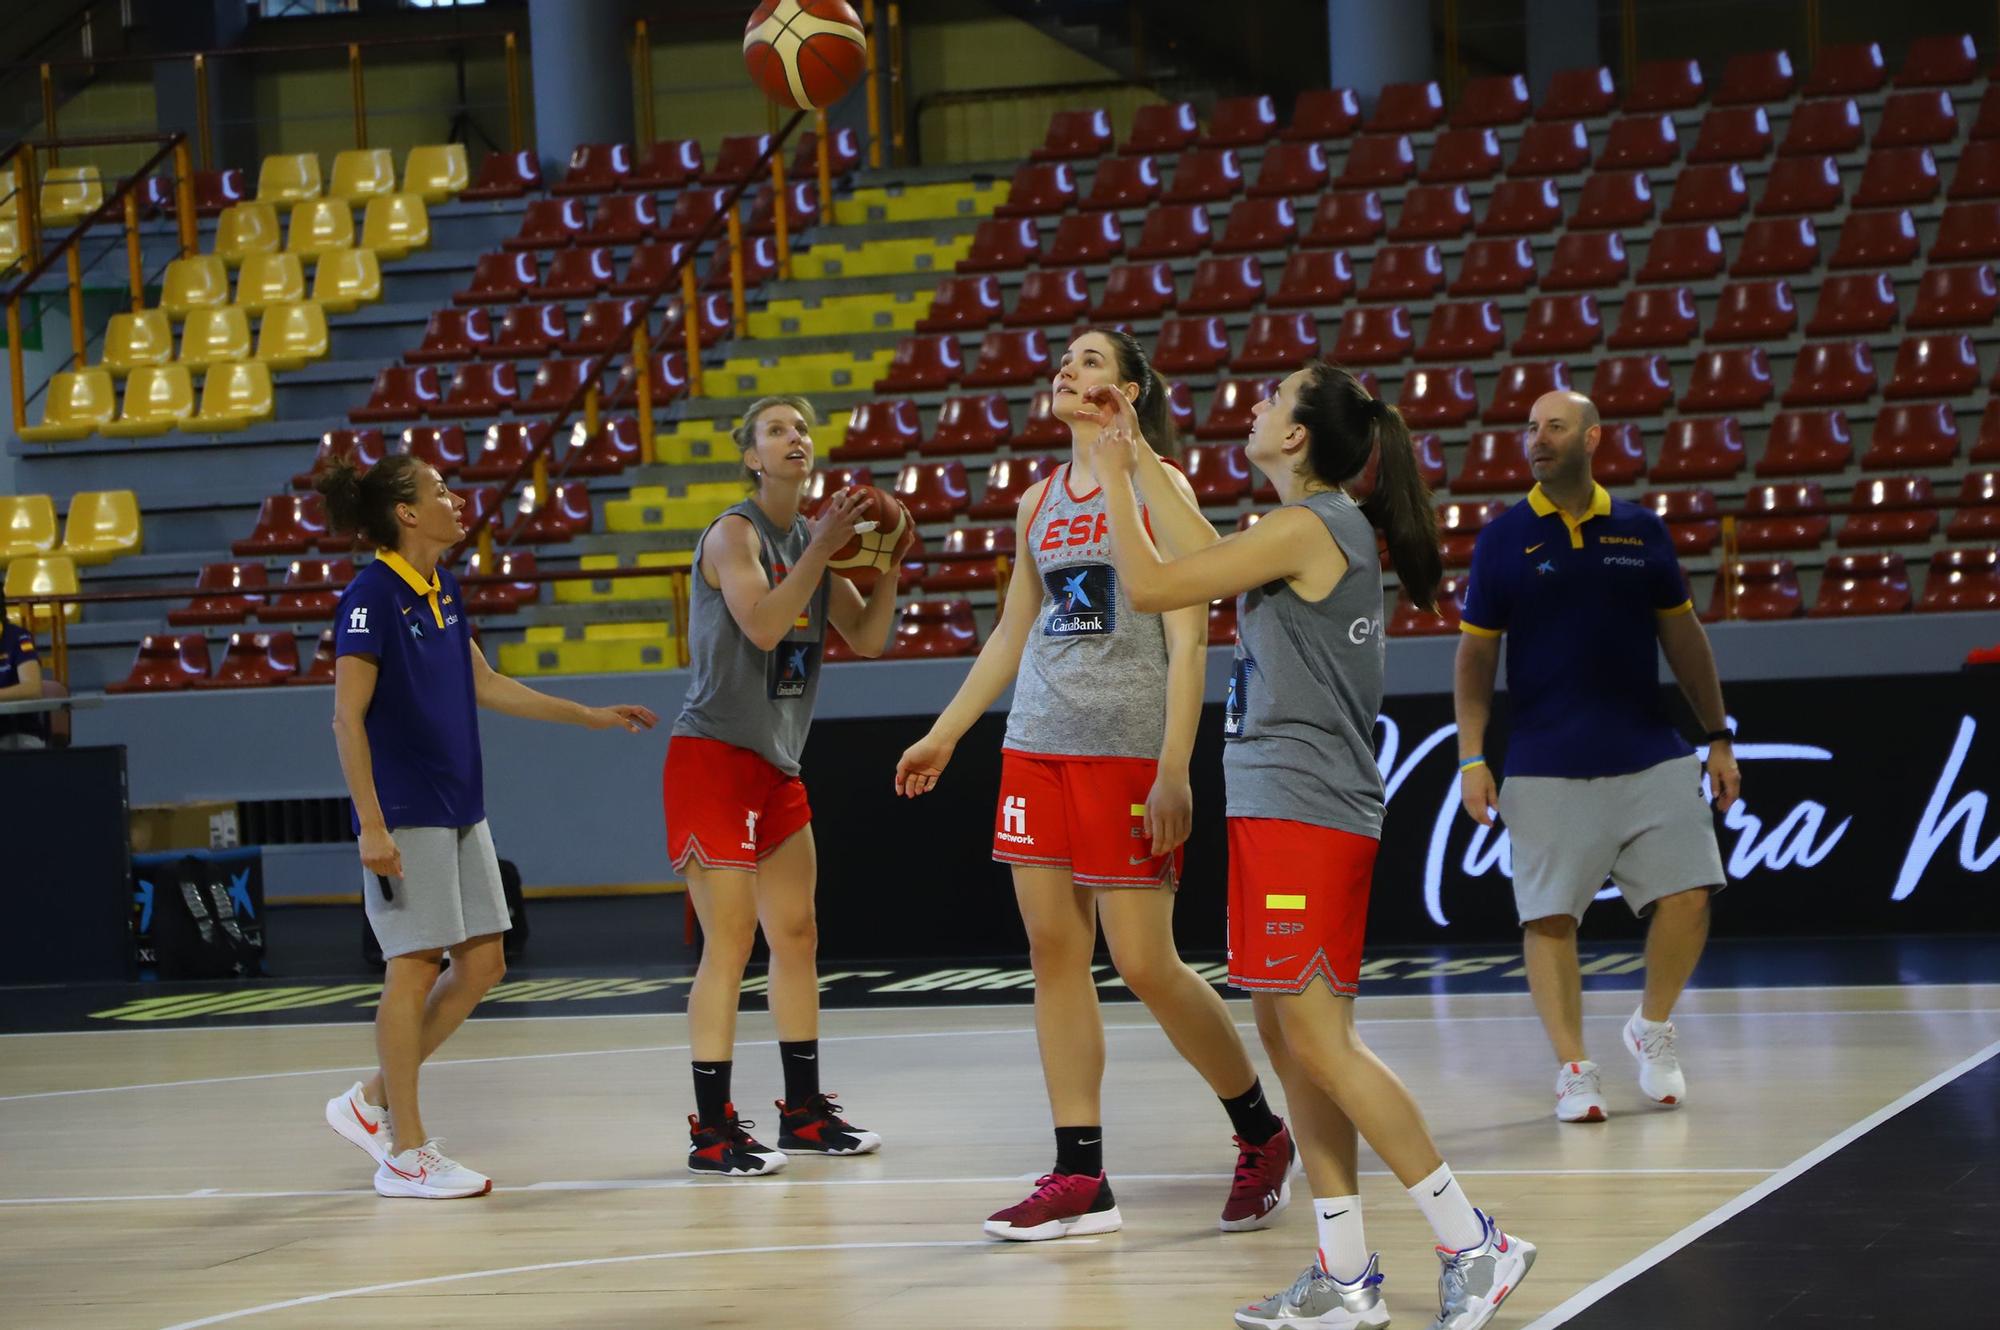 La selección española femenina de baloncesto con el alcalde de Córdoba, en imágenes